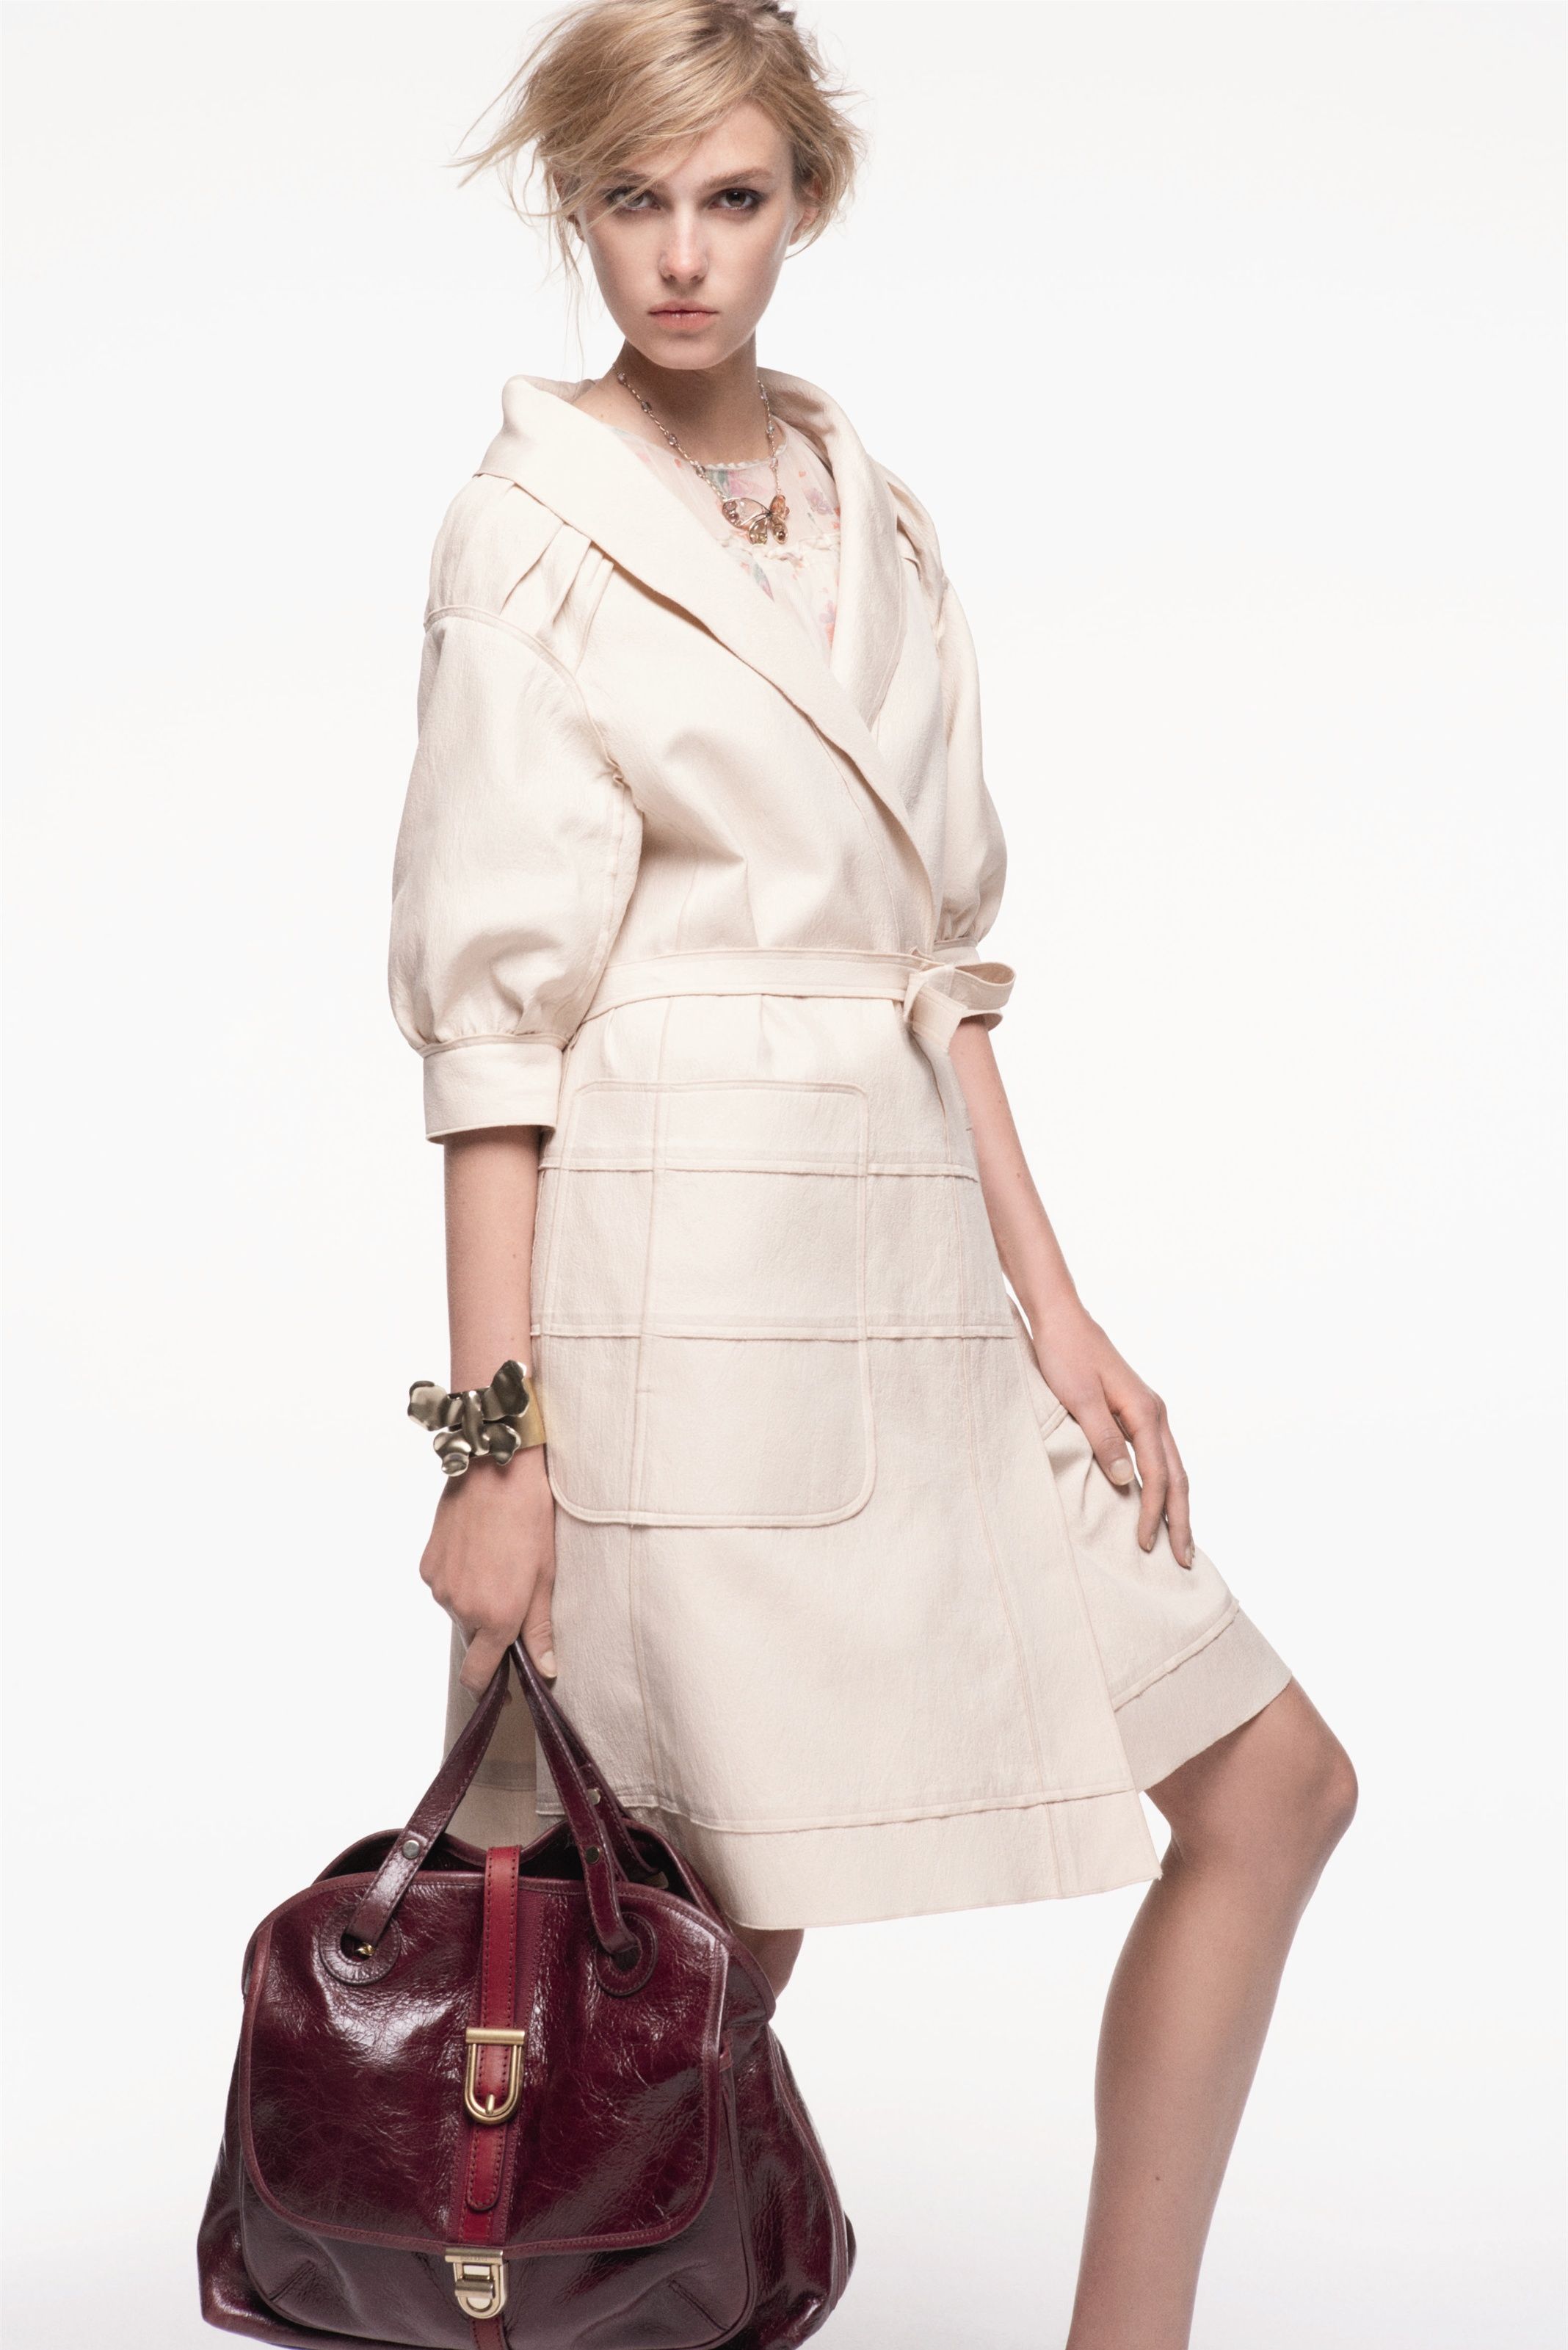 Nina Ricci Resort 2013 Collection | Fab Fashion Fix